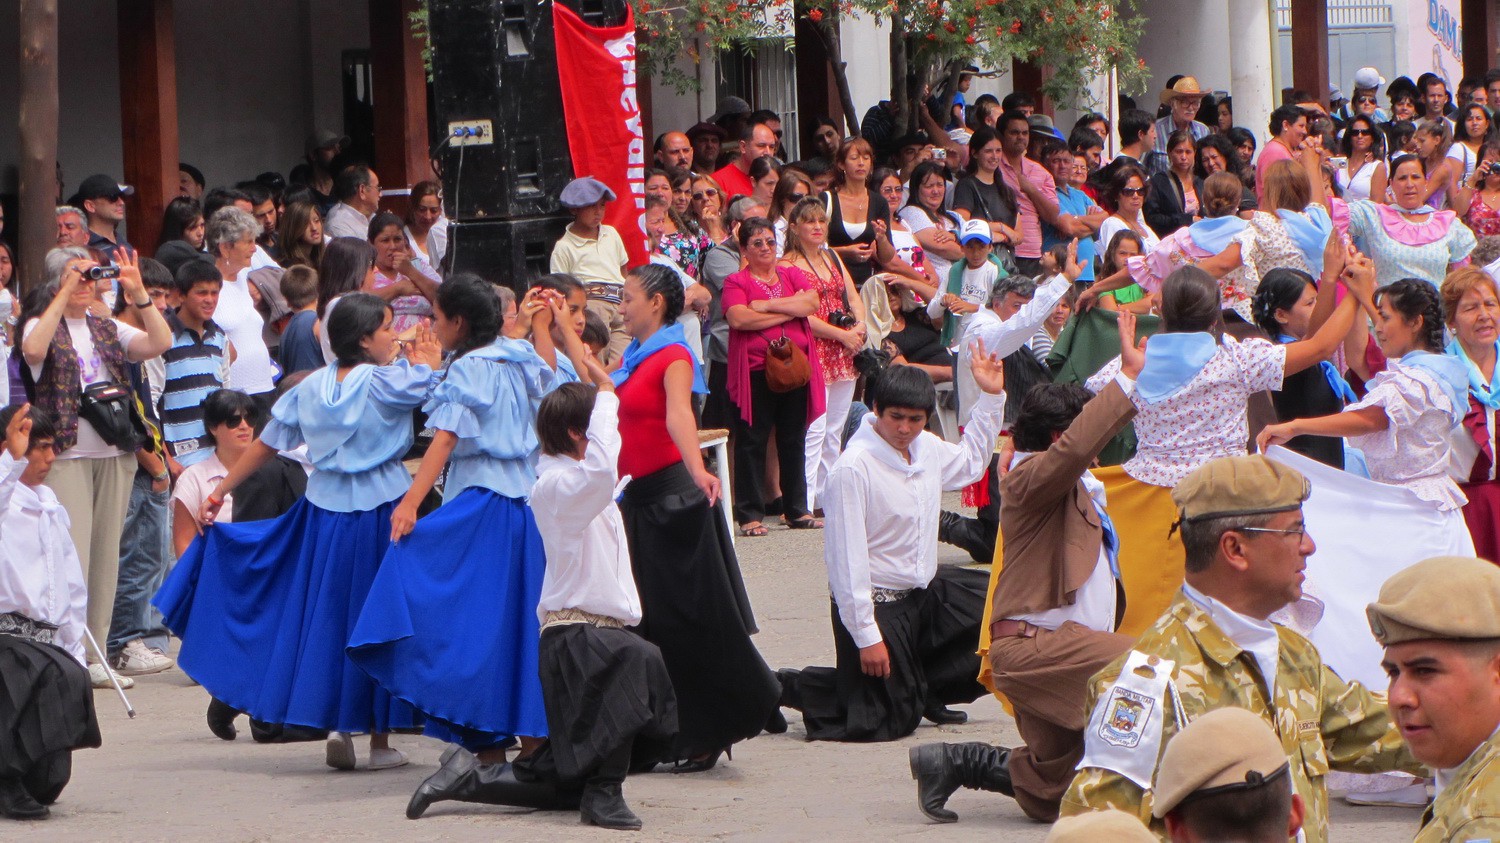 Dancing in Junin de los Andes